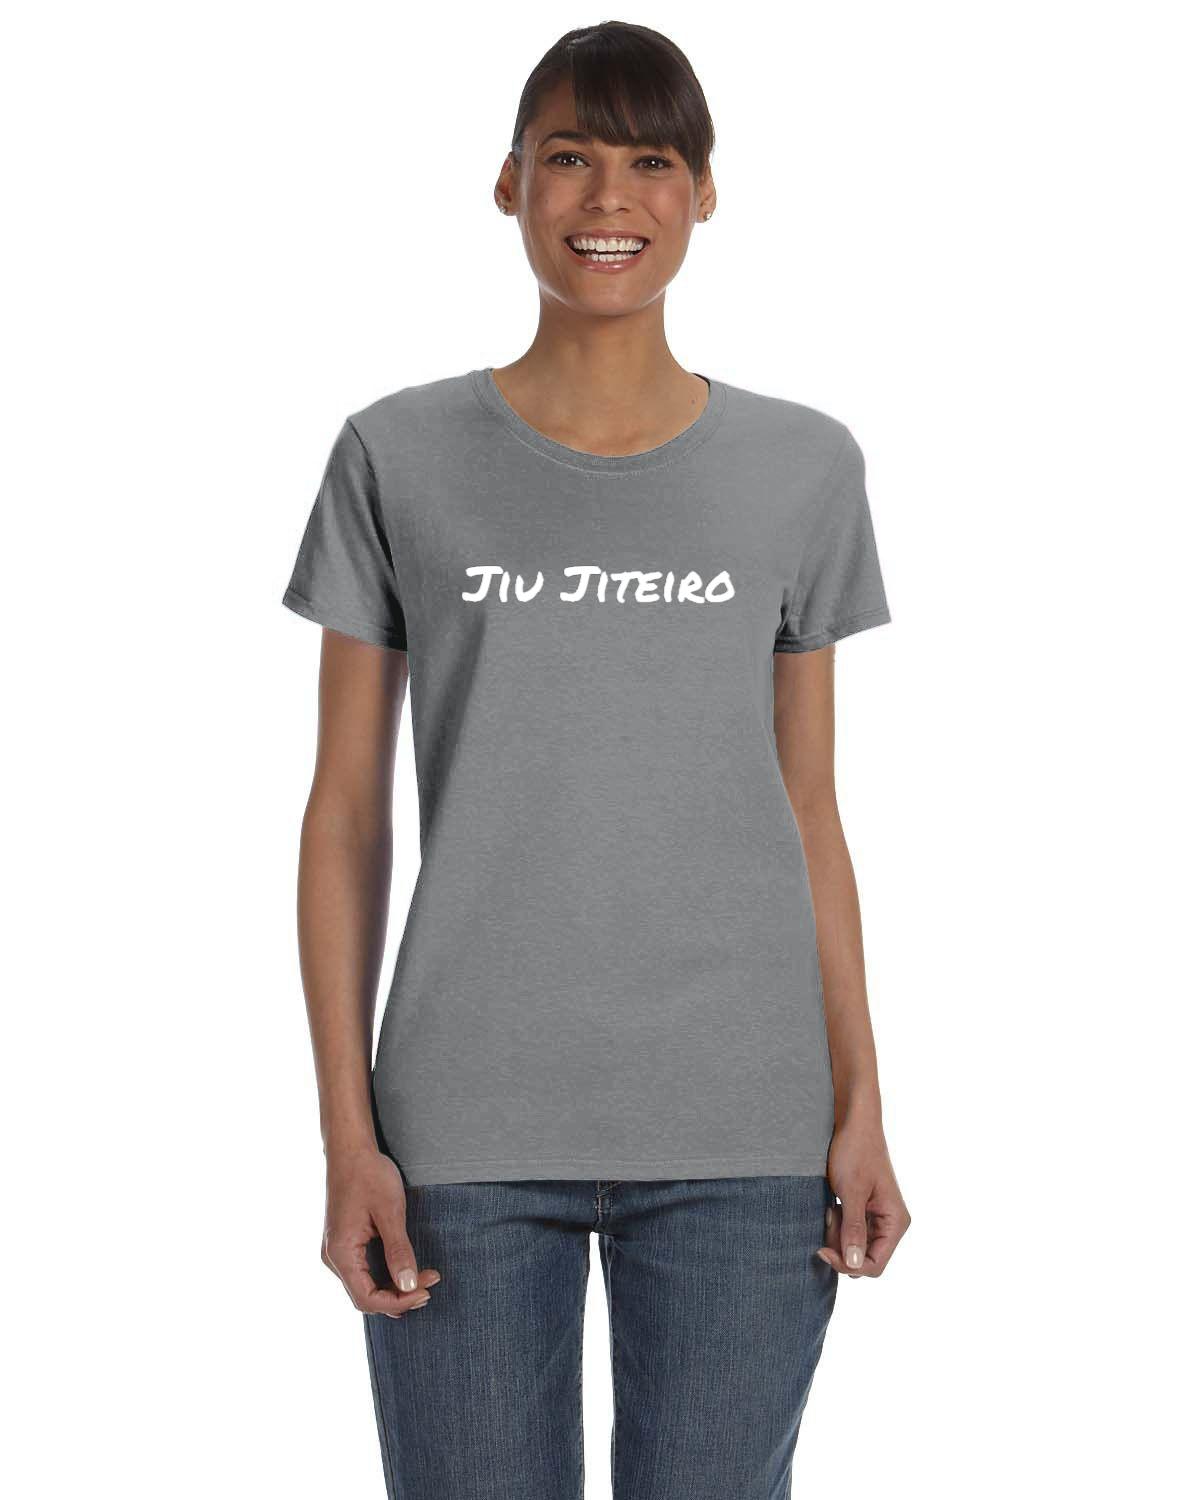 Jiu Jiteiro Womens T-Shirt